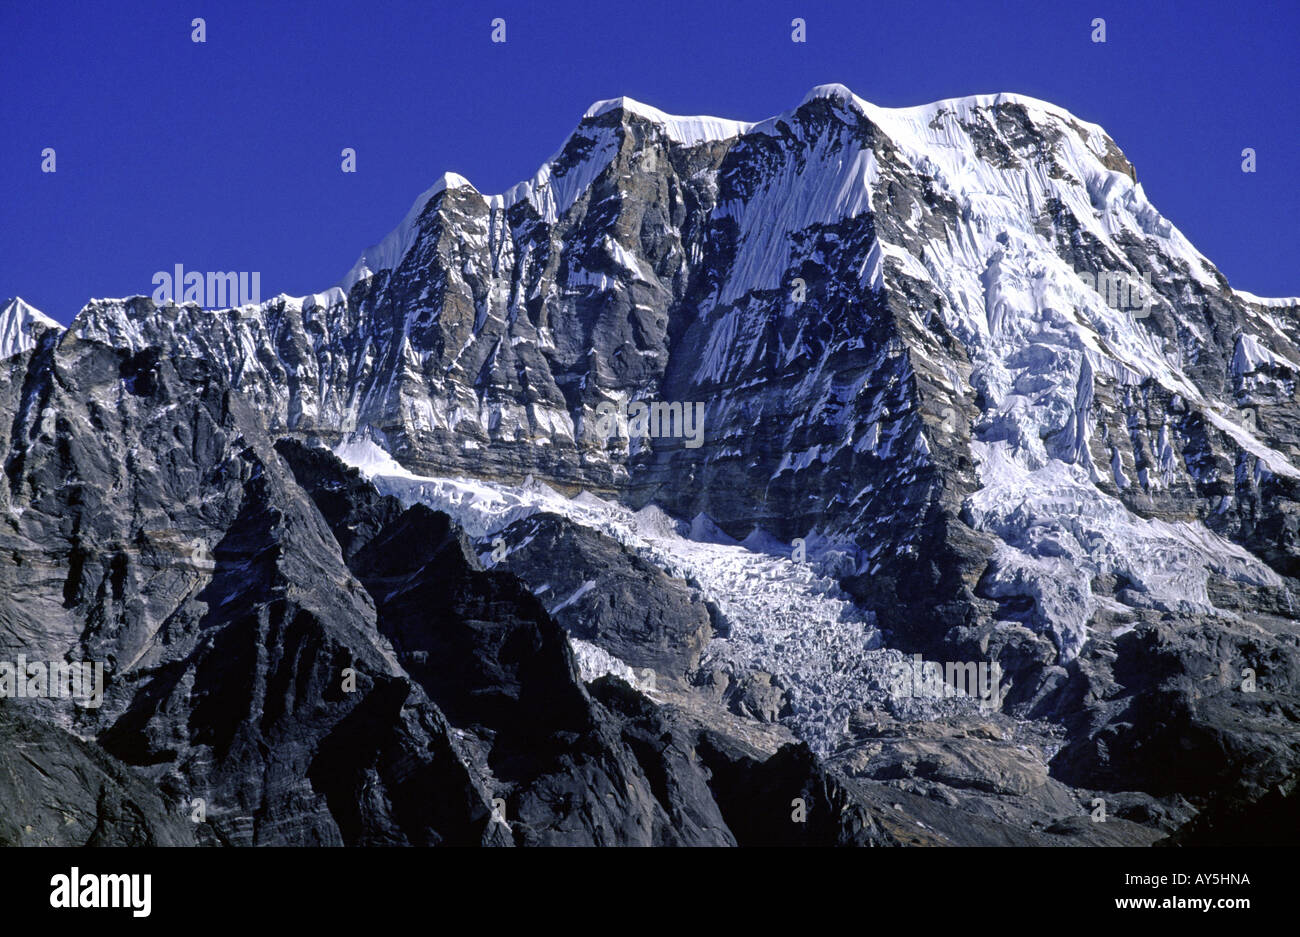 The trekking peak of Mera Peak 6476m in the Himalaya Nepal Stock Photo